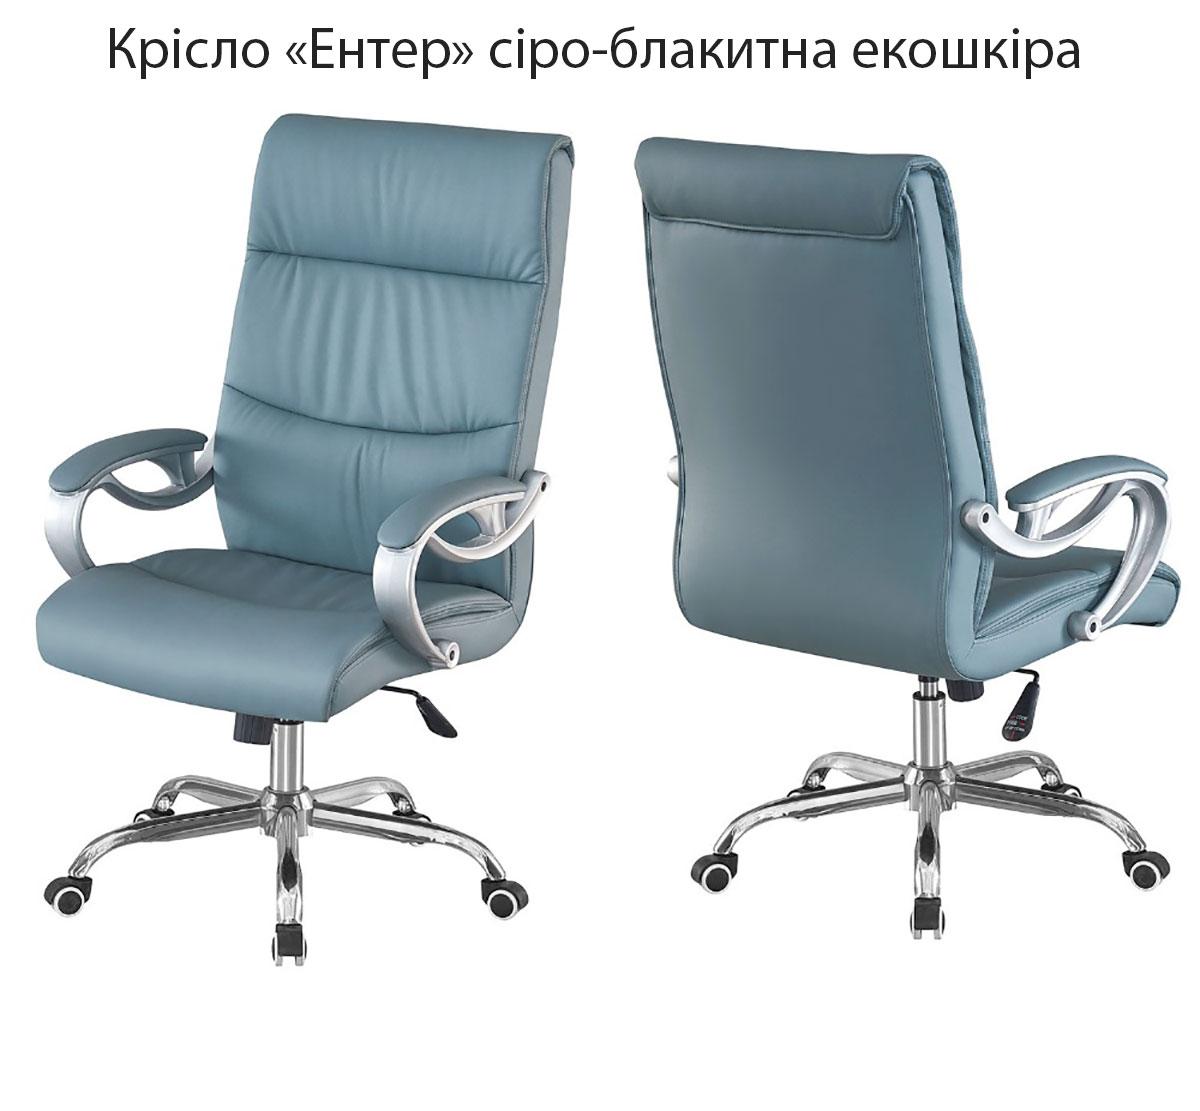 Робоче офісне крісло Enter (Ентер) хромований каркас із колесиками, оббивка сіро-блакитна екошкіра